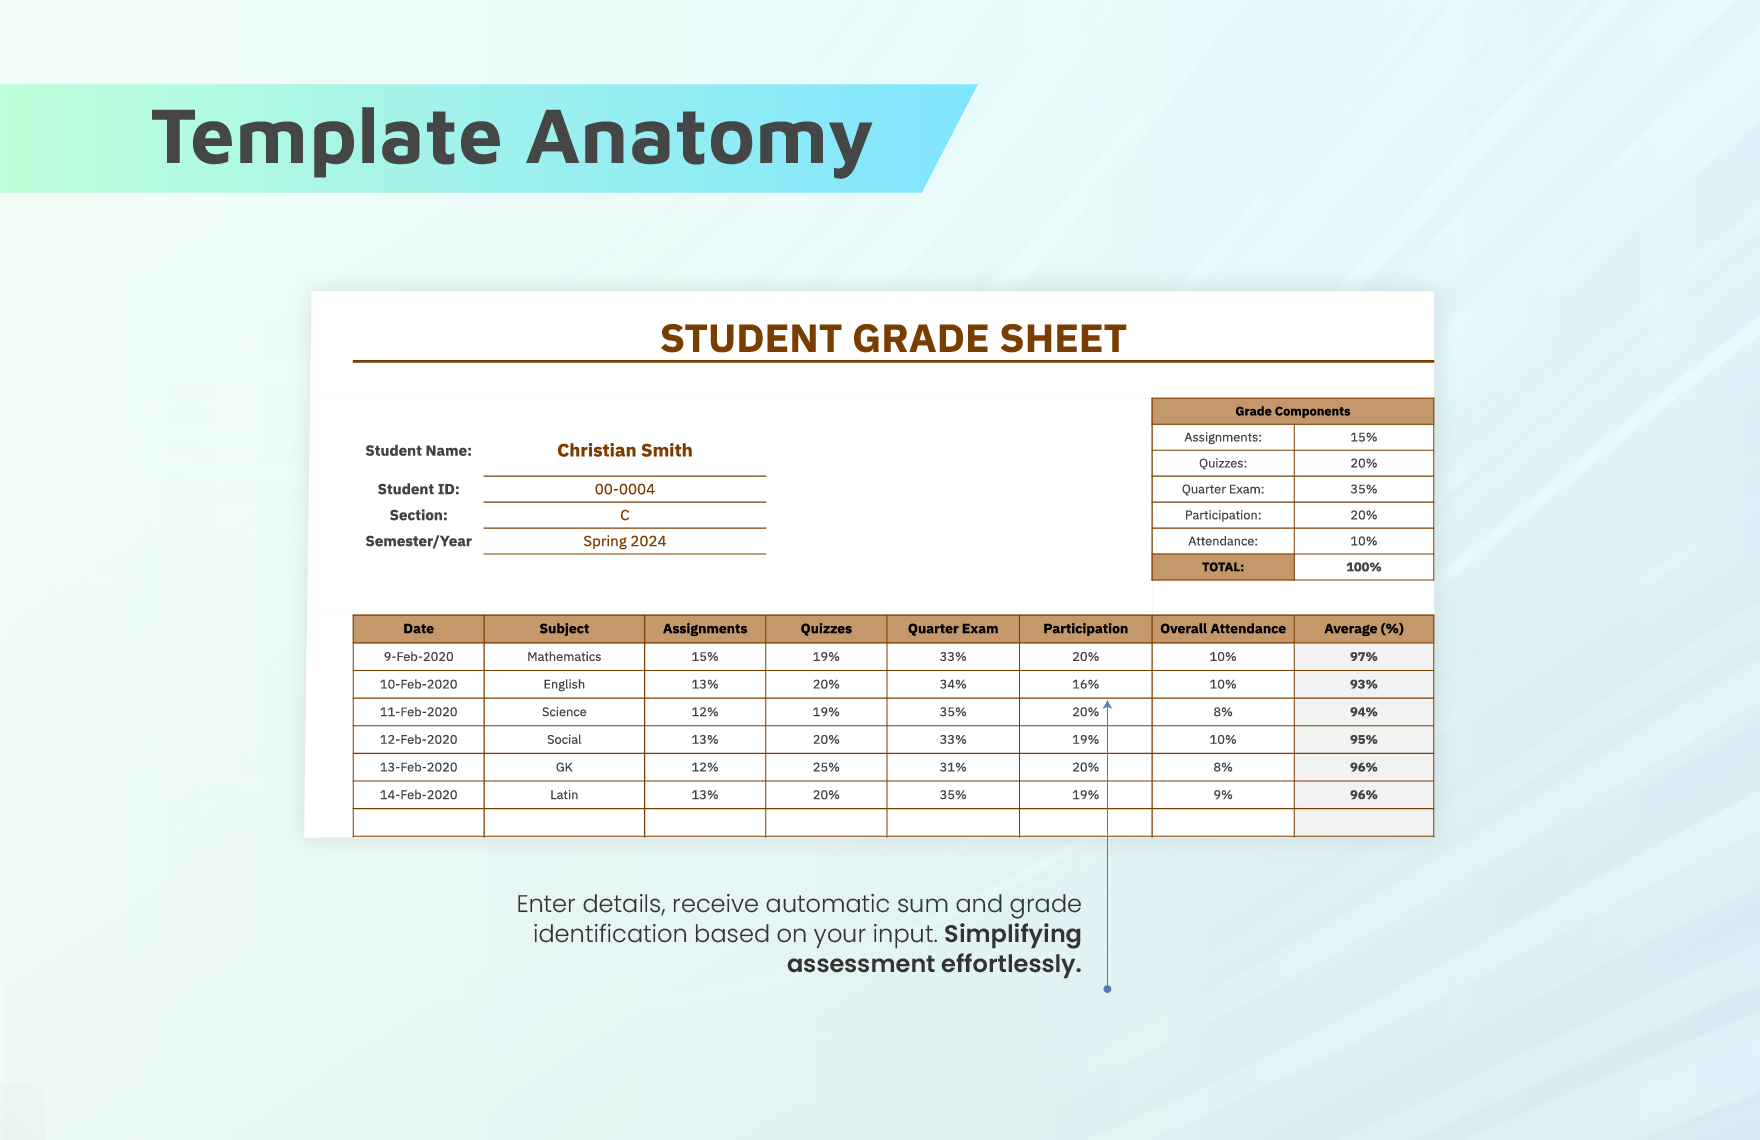 Student Grade Sheet Template